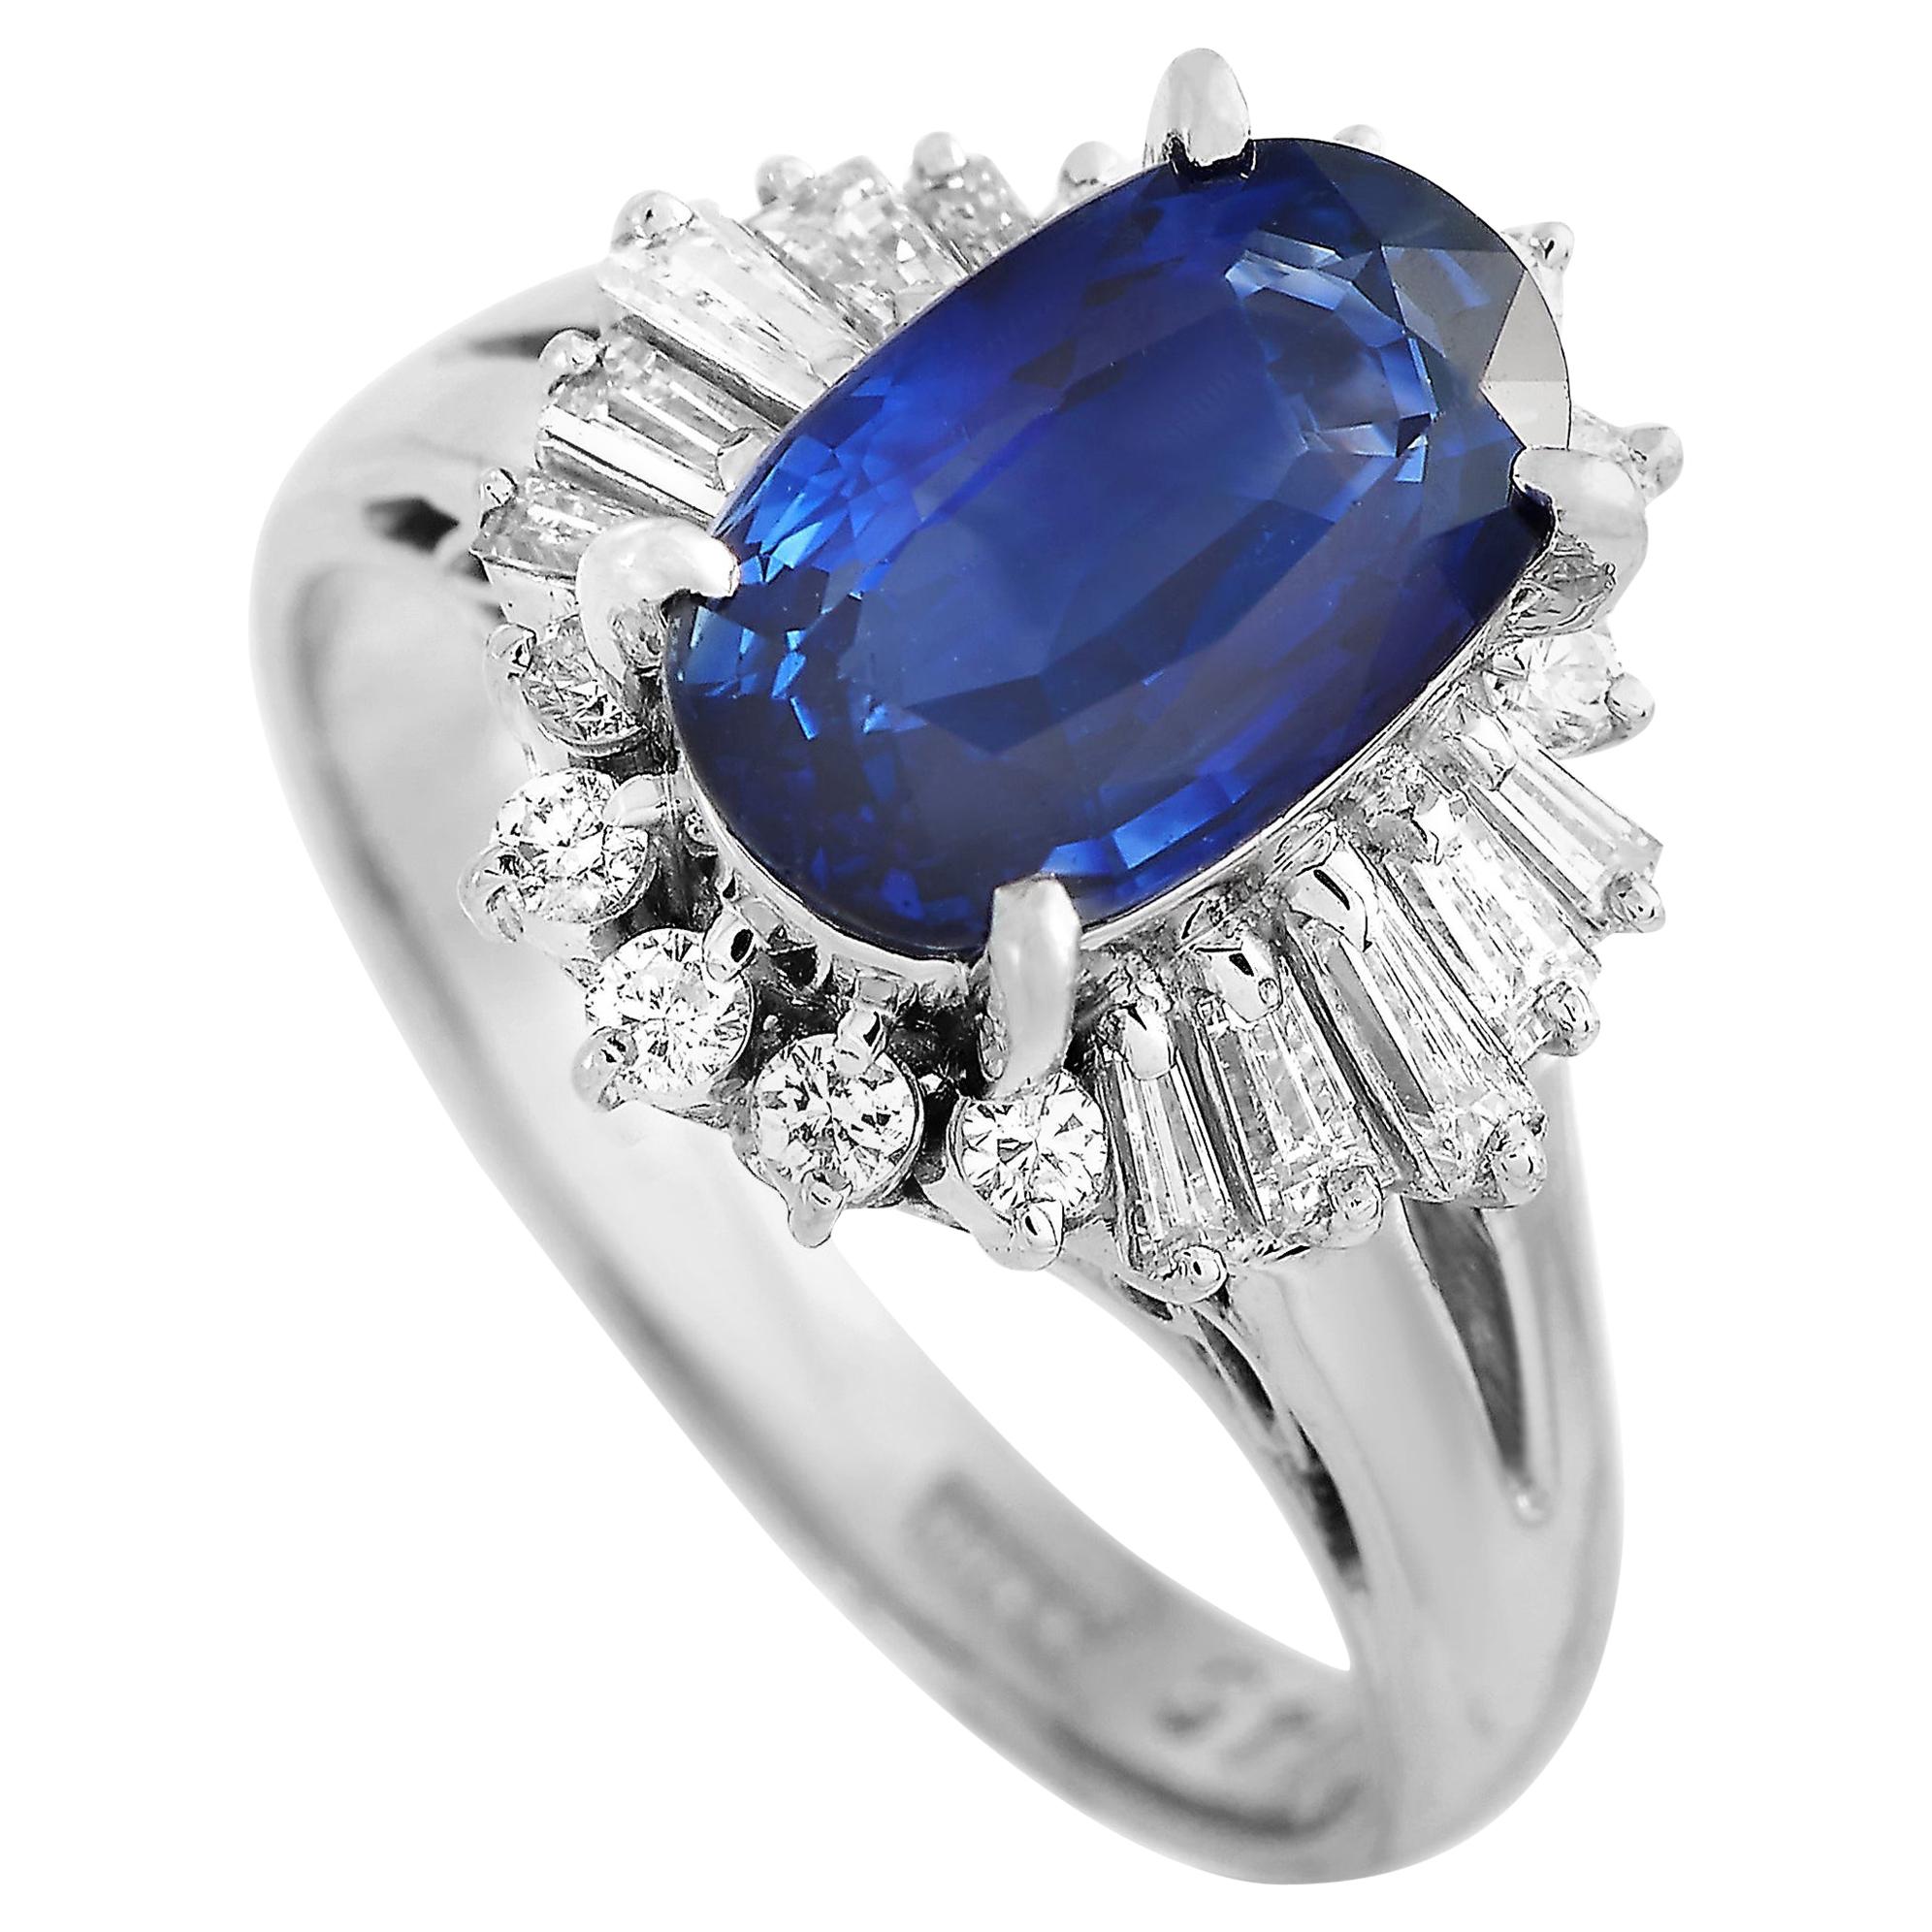 LB Exclusive Platinum 0.45 Carat Diamond and Sapphire Ring